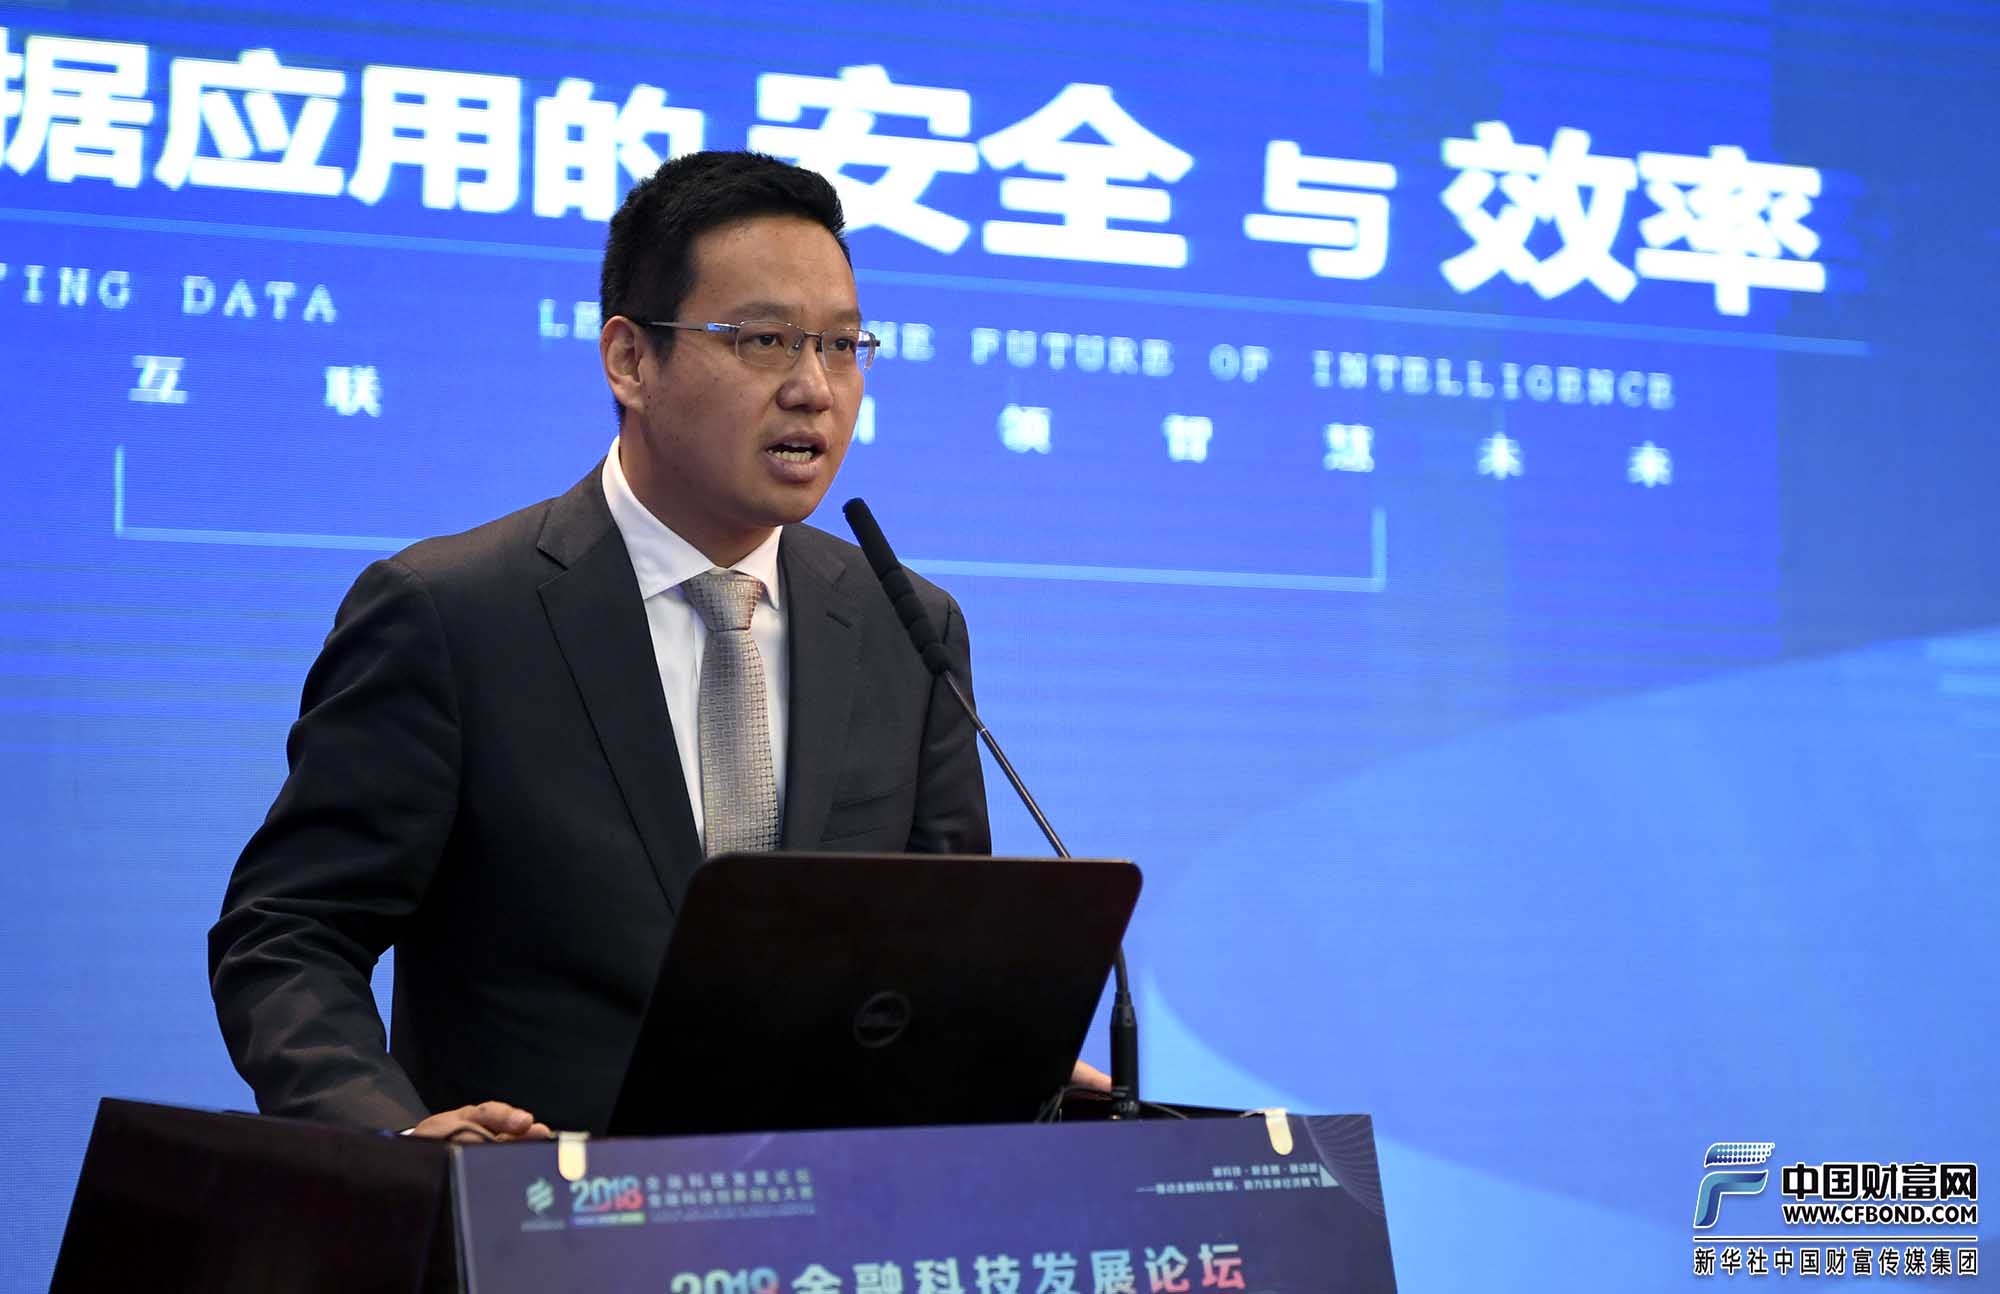 上海数据交易中心CEO特别助理兼北方区总经理牛双云演讲